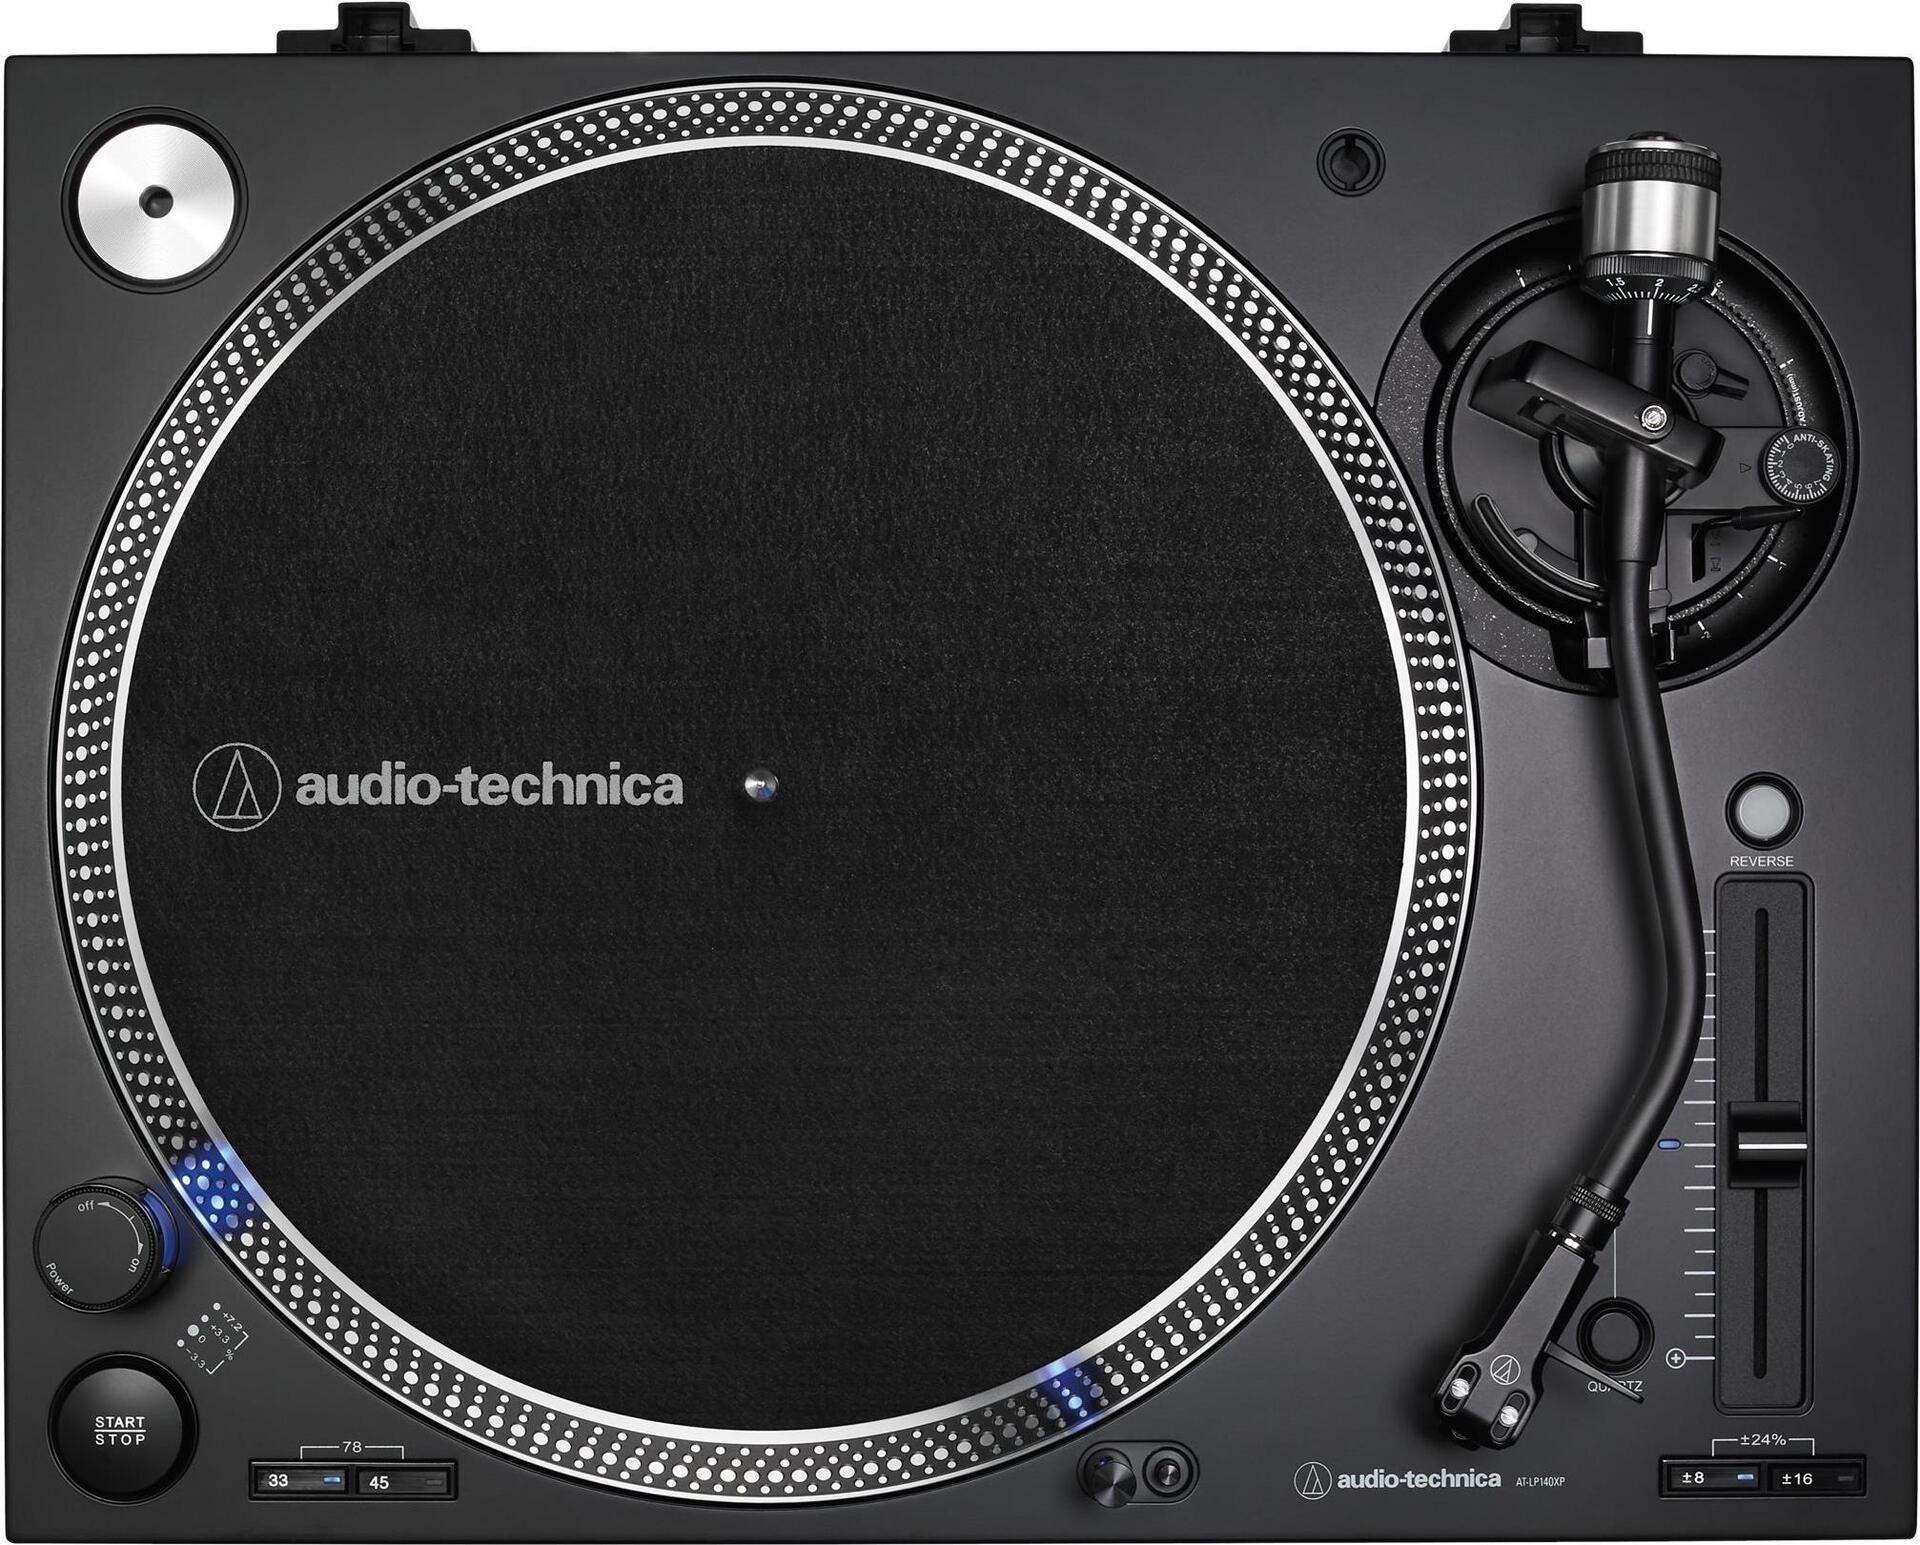 AUDIO-TECHNICA Audio Technica AT-LP140XP DJ Plattenspieler schwarz